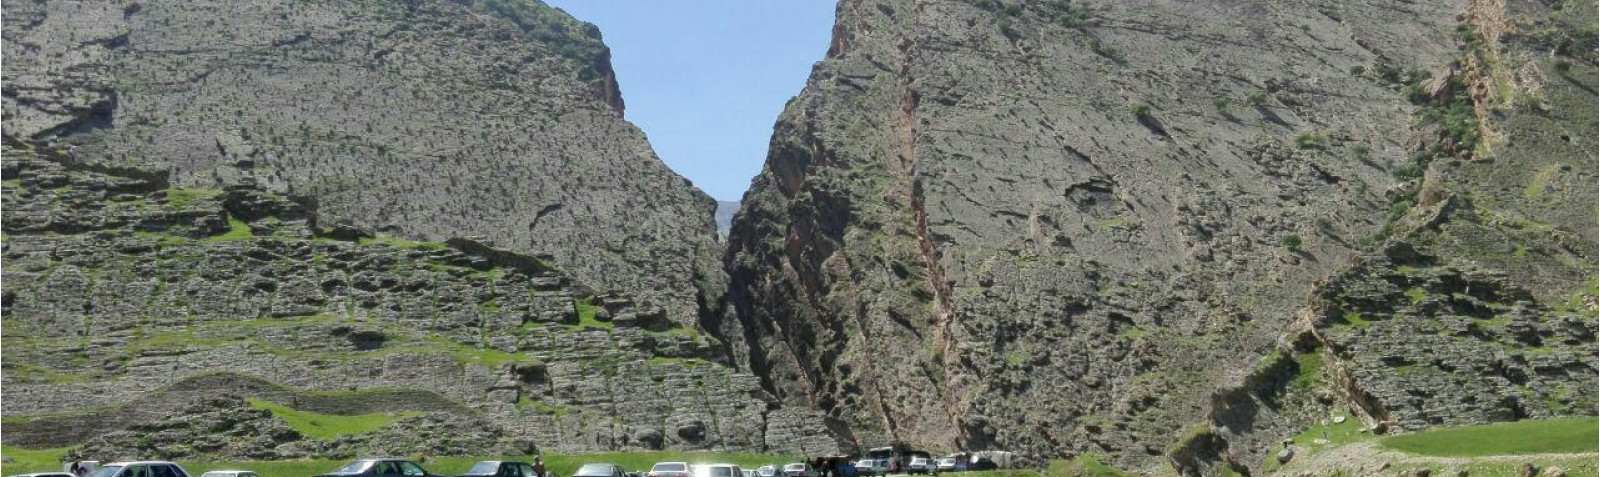 El cañón de Bahram-e Choobin